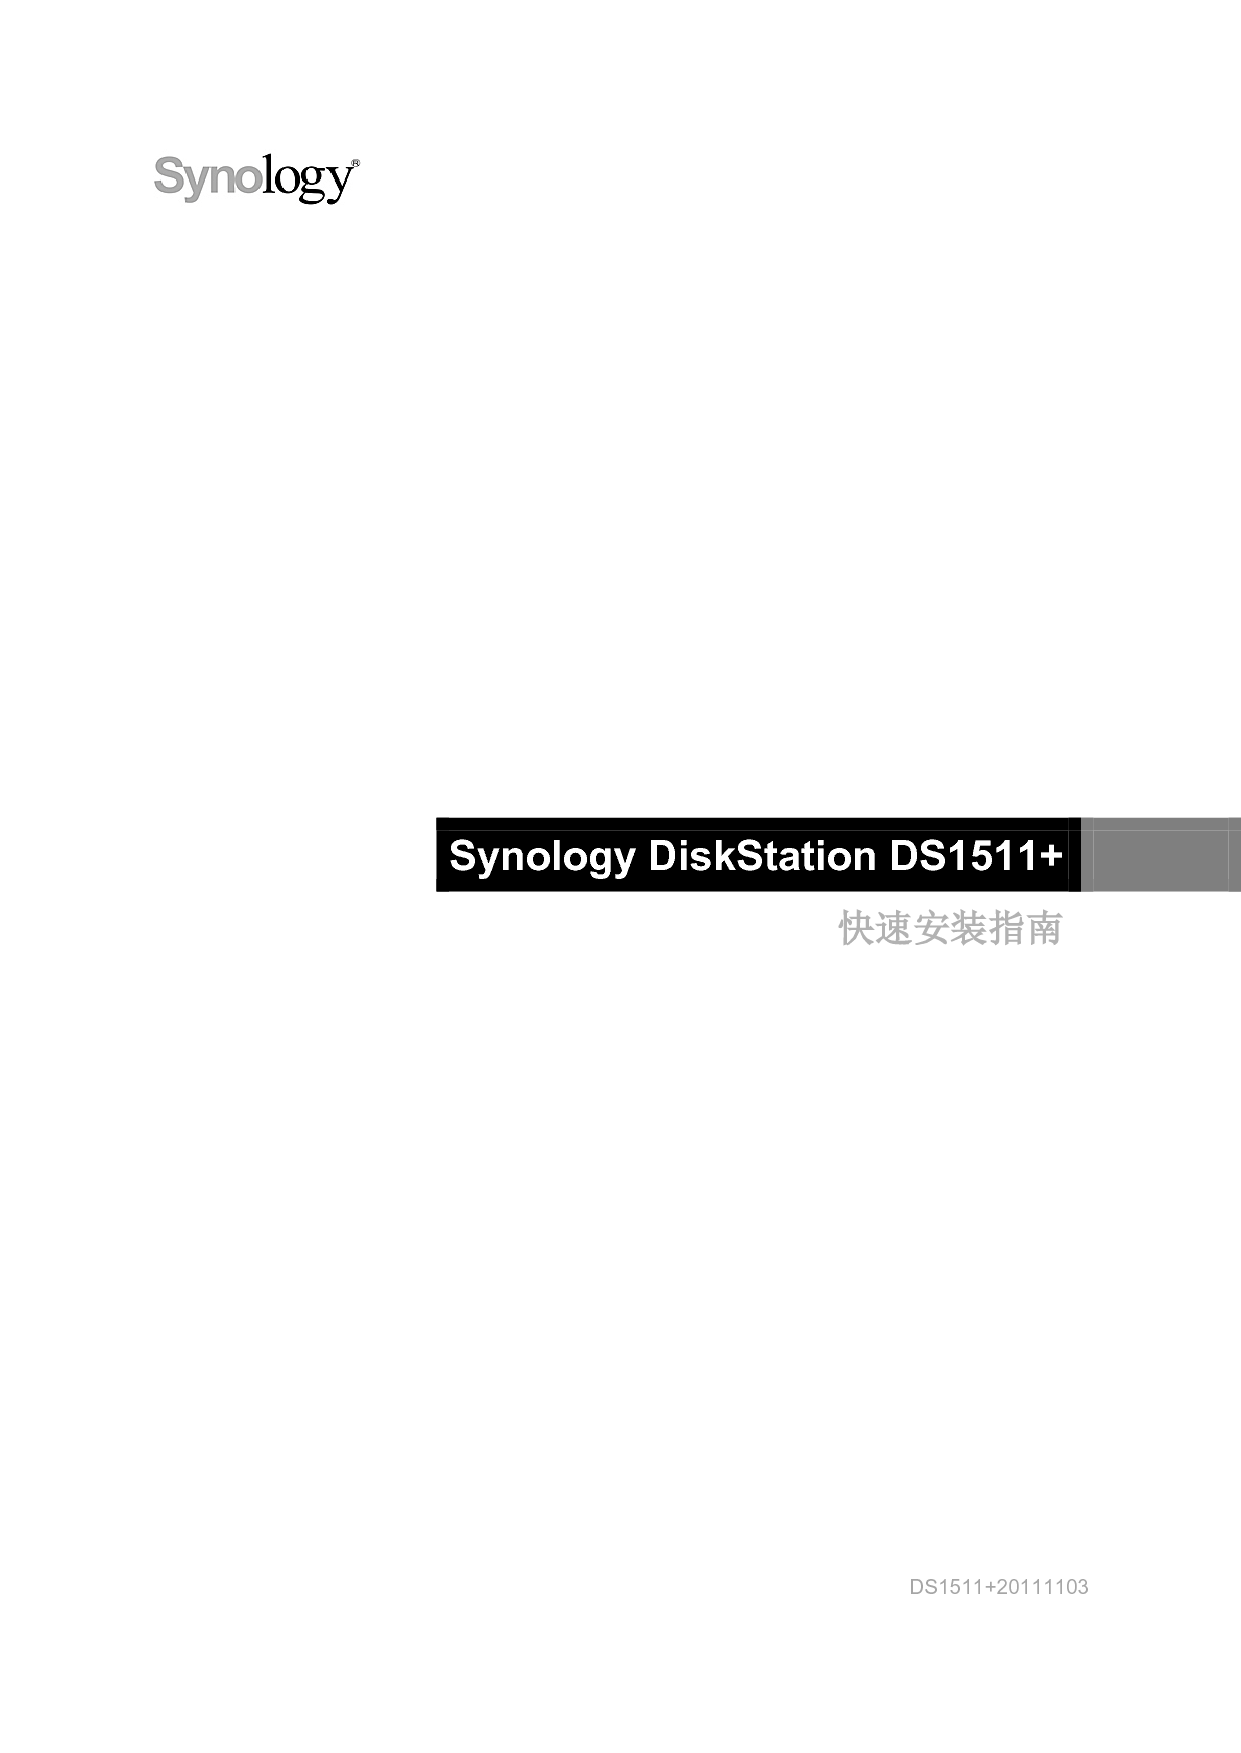 群晖 Synology DS1511+ 快速安装指南 封面